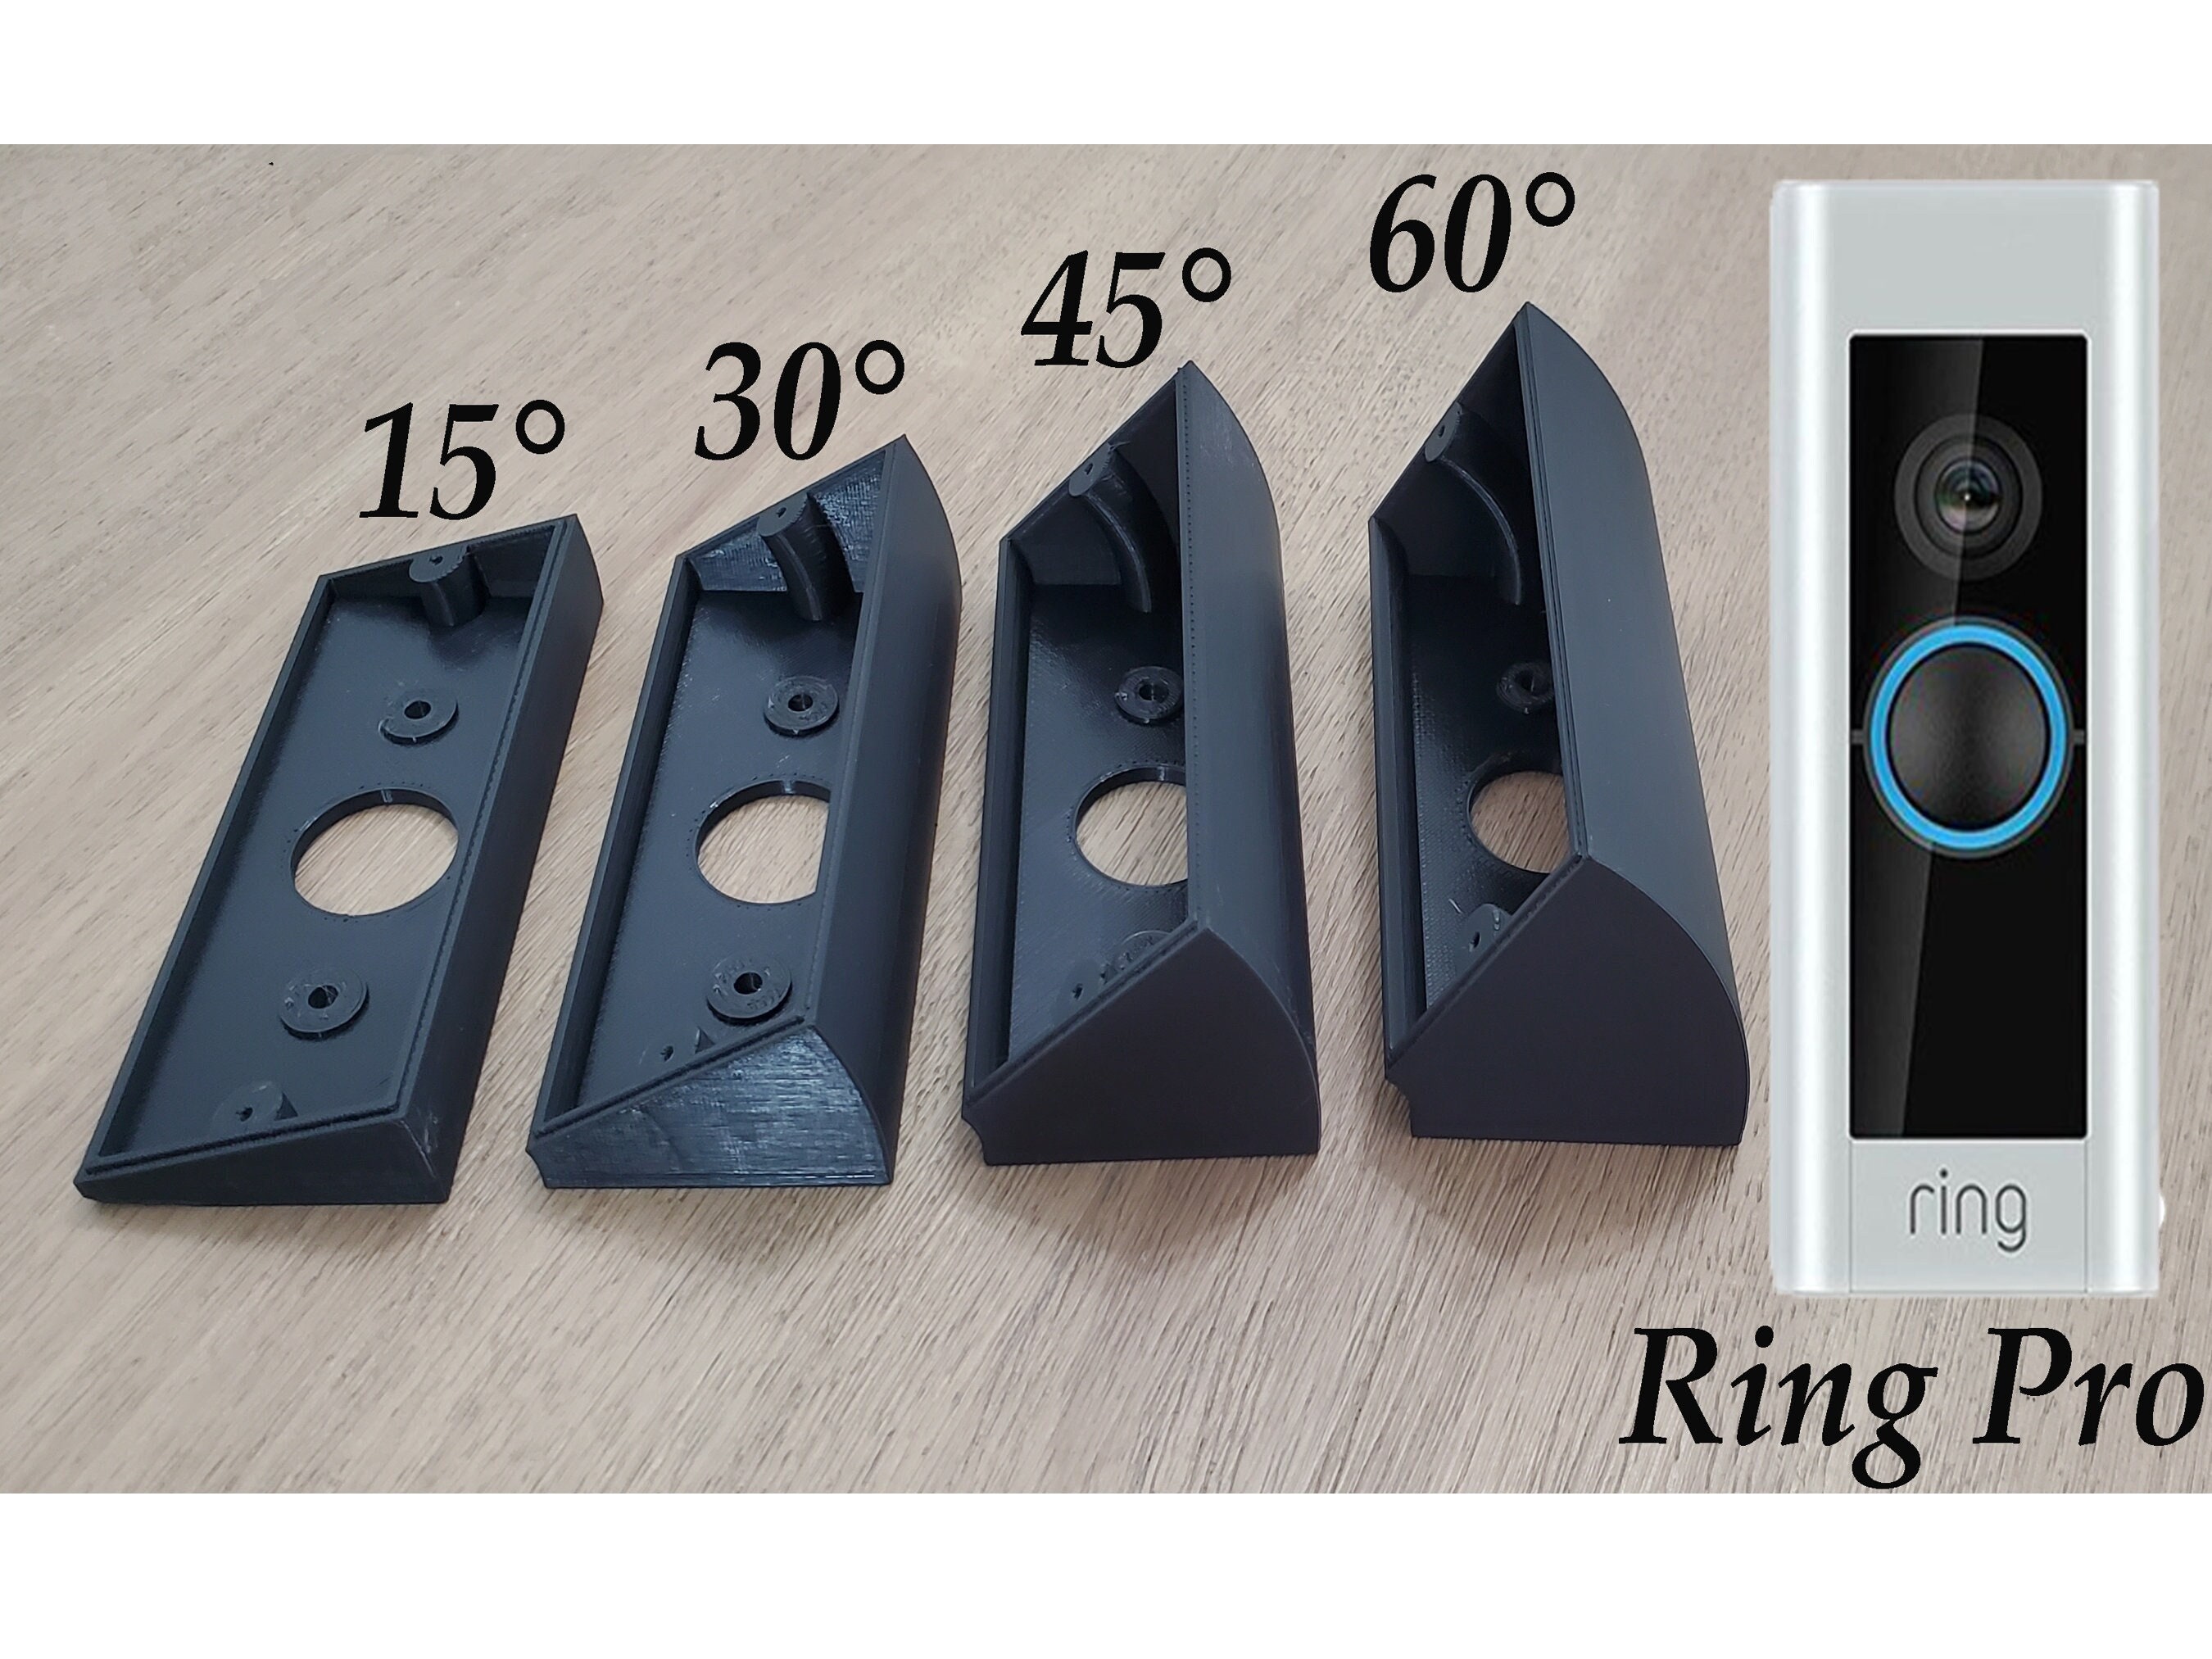 Ring's new video doorbell is $60